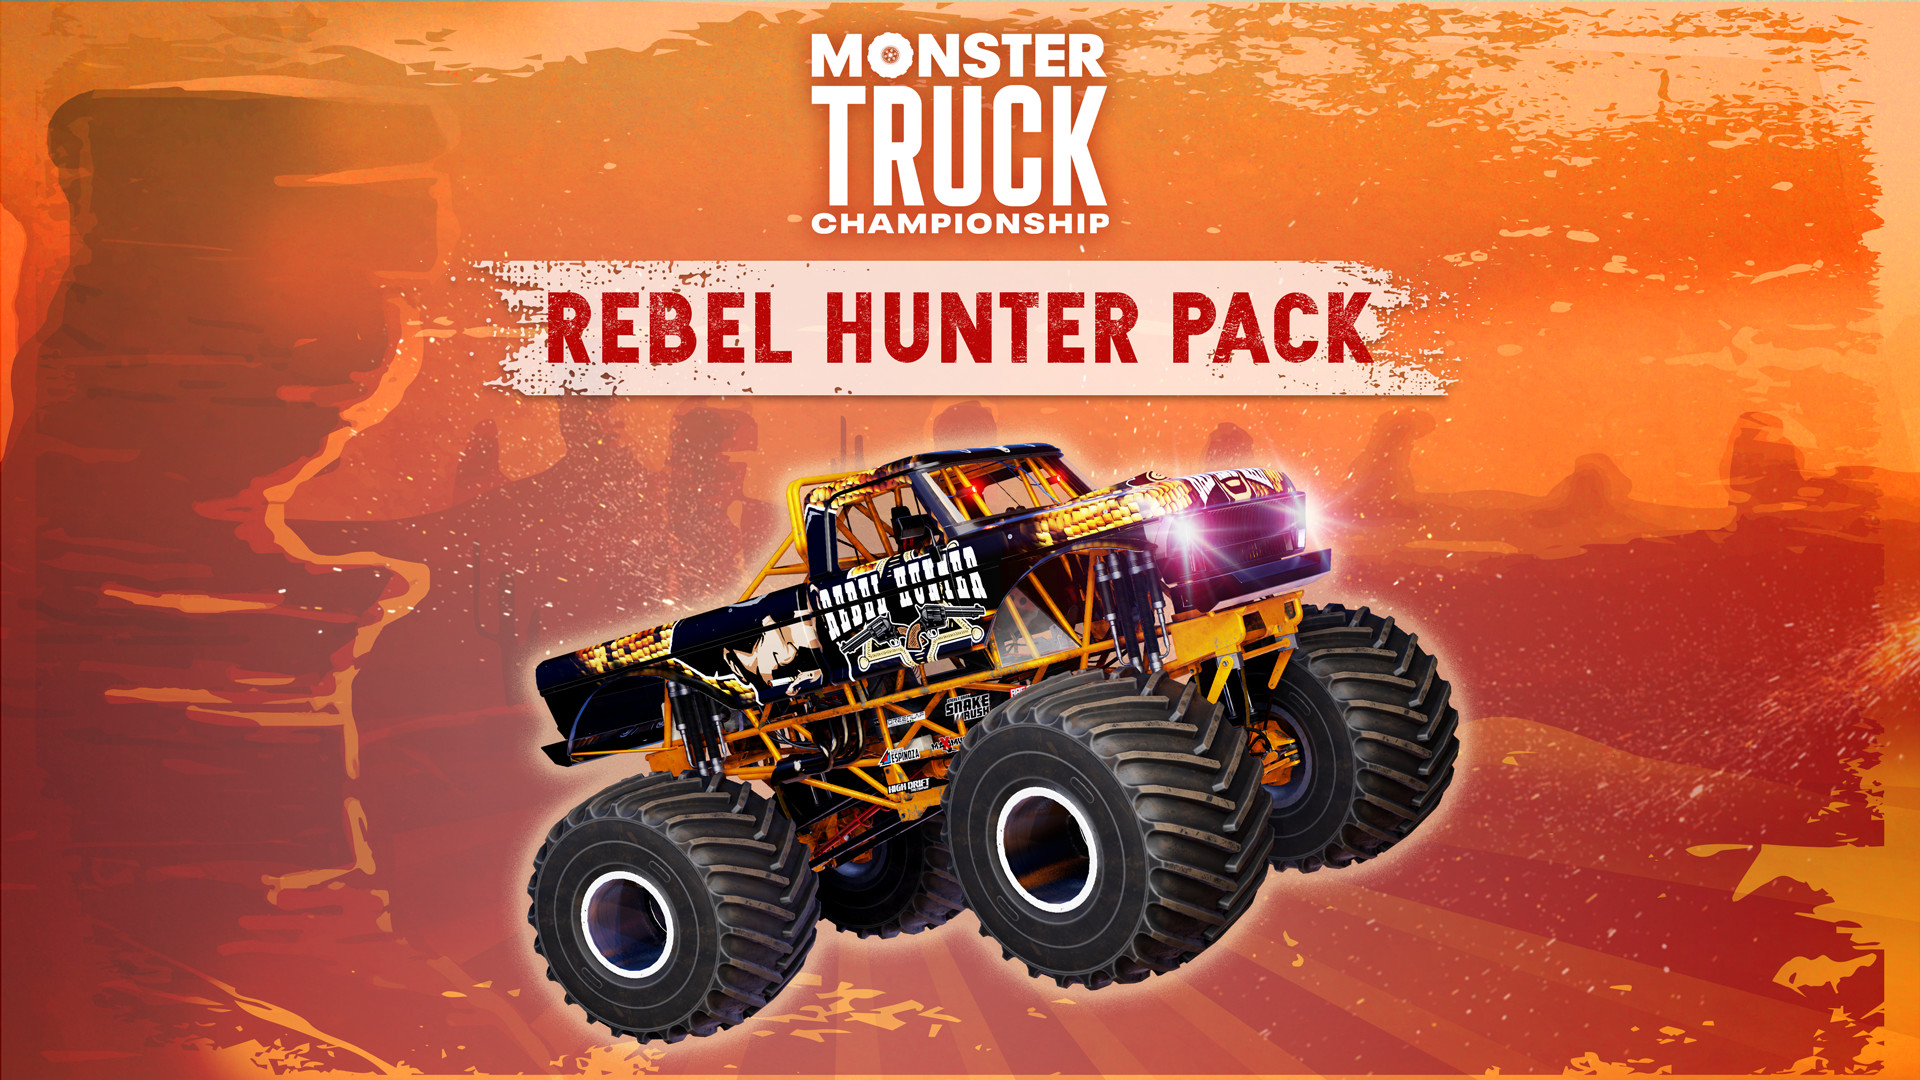 Monster Truck Championship - Rebel Hunter Pack DLC Steam CD Key [$ 10.16]